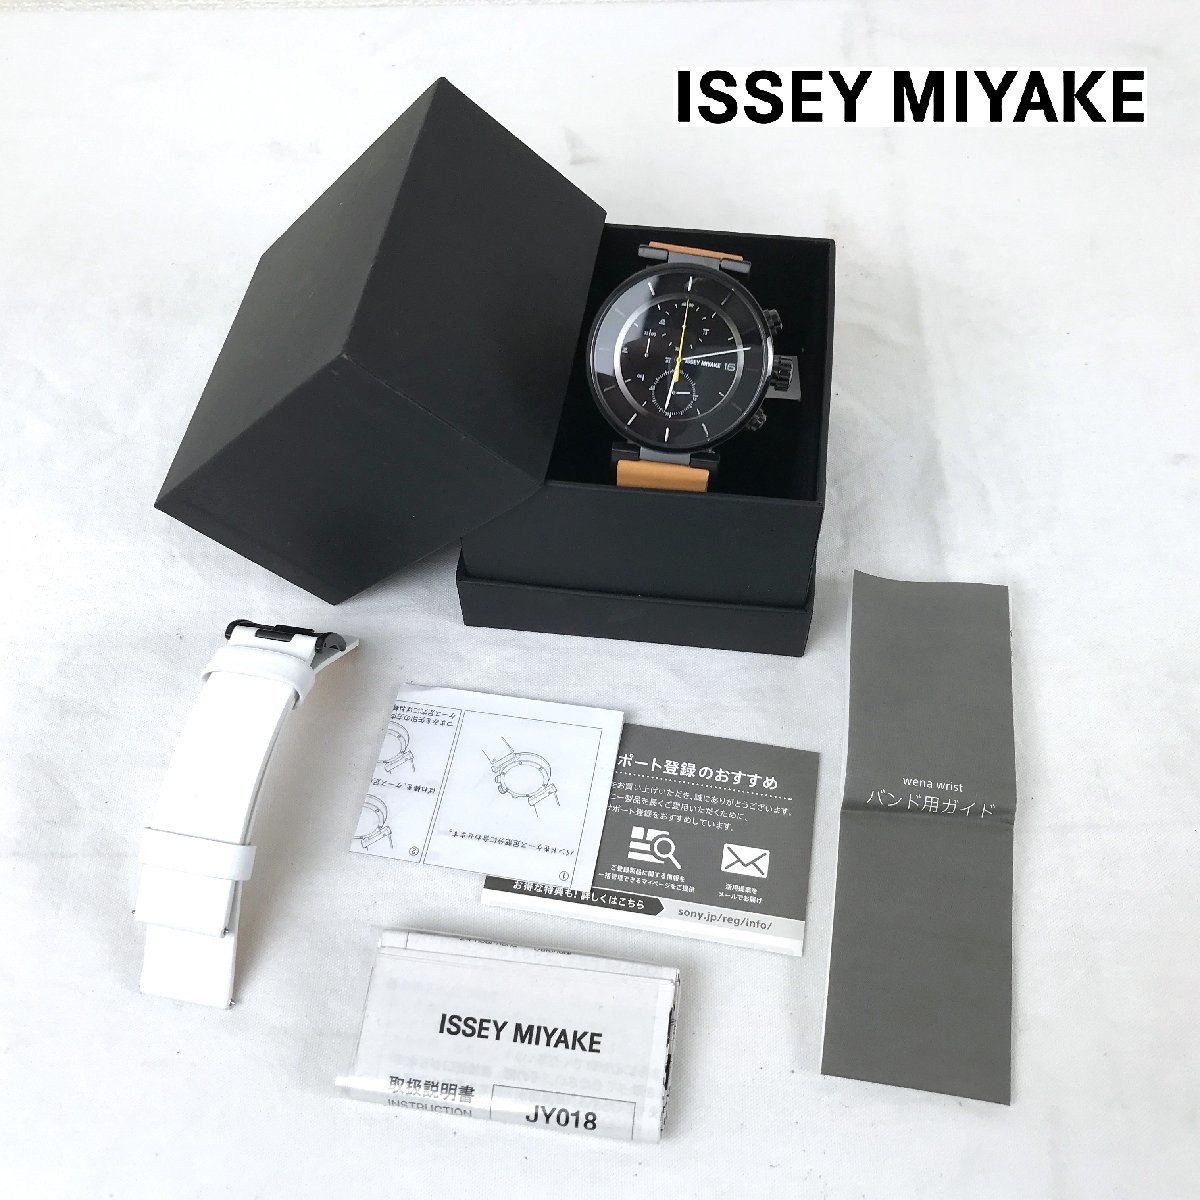 1202【未使用品】 ISSEY MIYAKE イッセイミヤケ クロノグラフ VK67-0010 W ダブリュ 腕時計 Designed by SATOSHI WADA 和田智_画像1